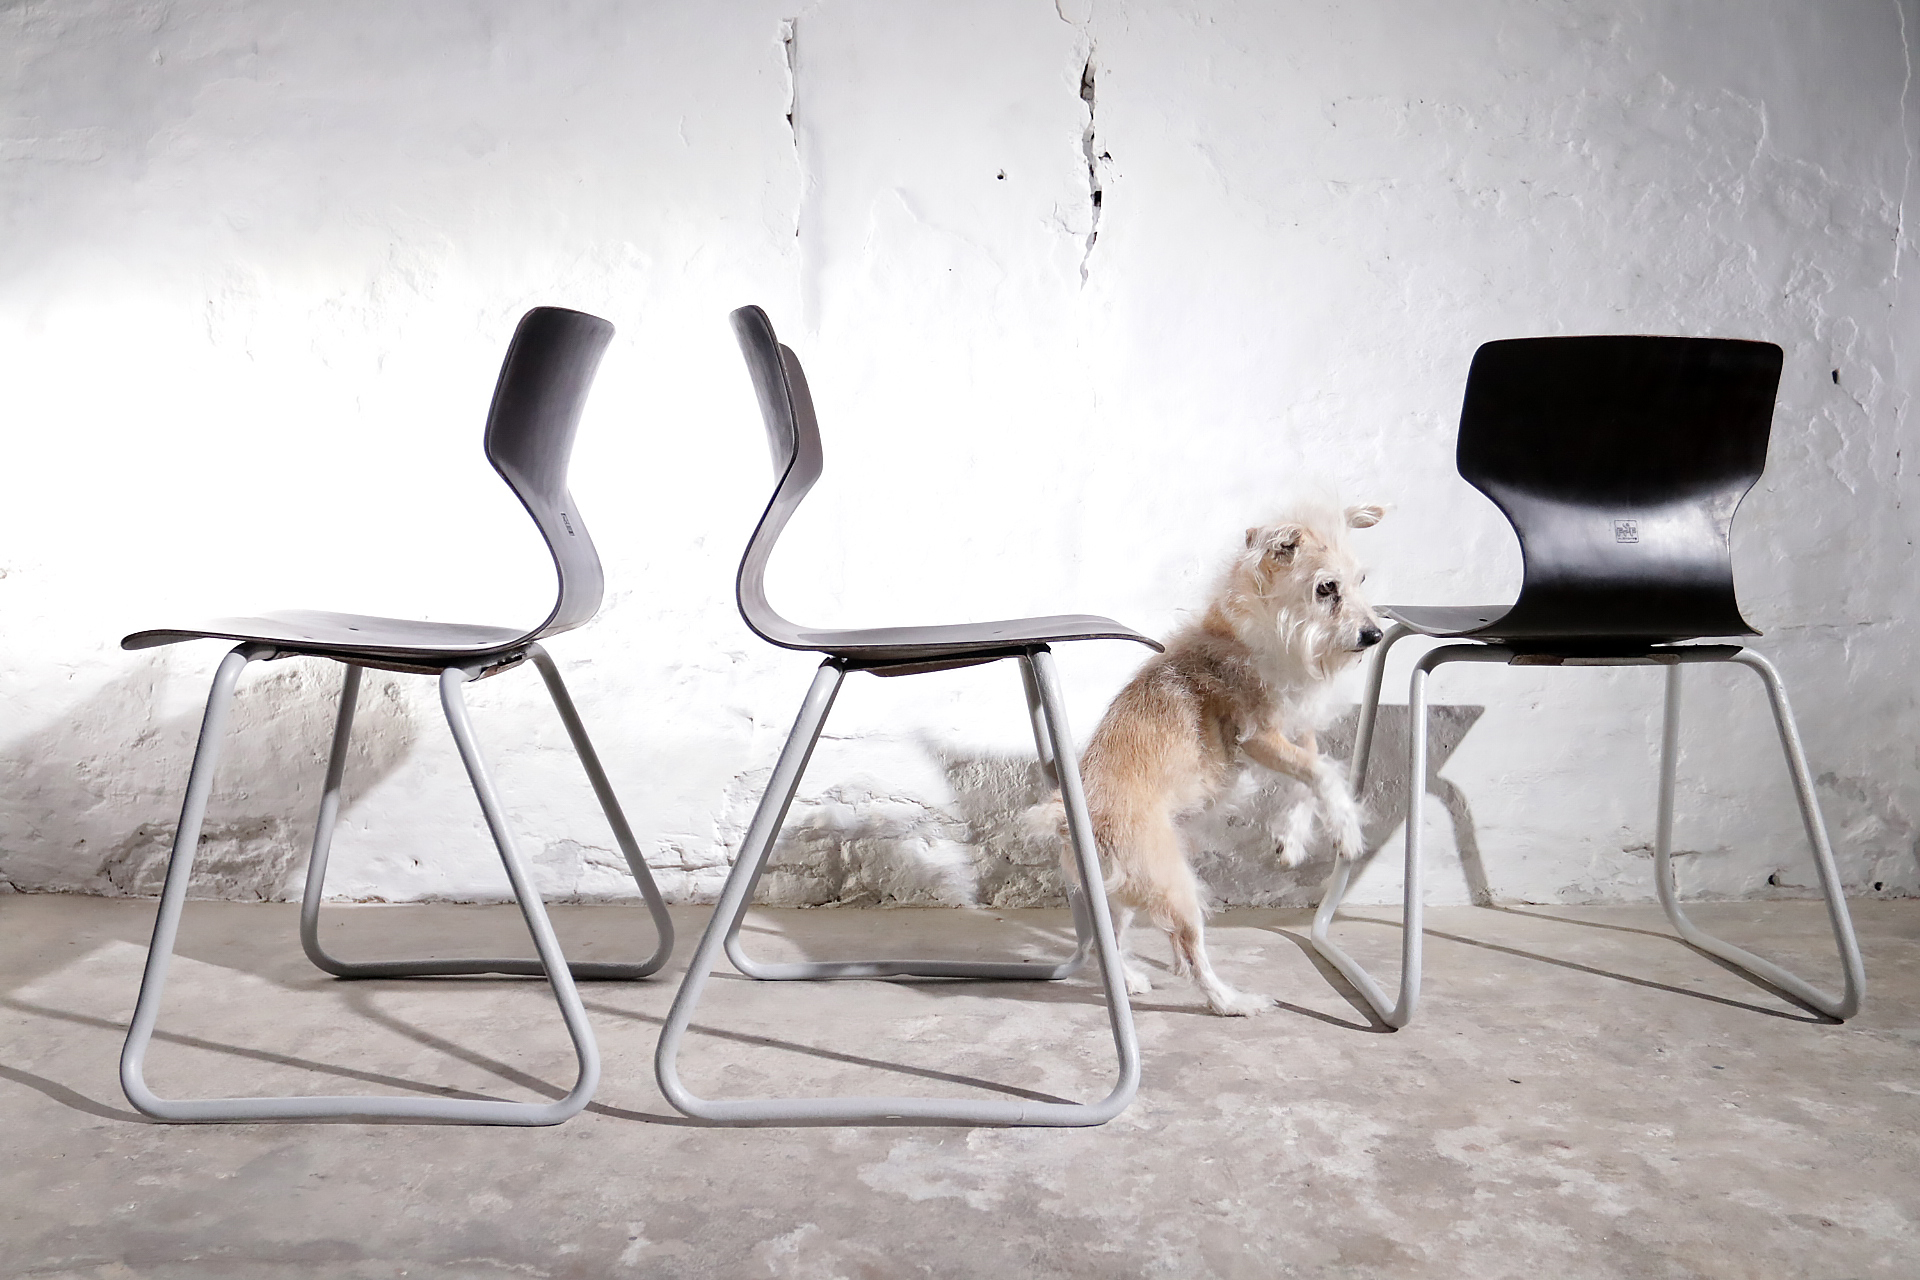 Achternaam Bij zonsopgang Bestaan Vintage Design Adam Stegner Flototto Germany Pagholz stoelen – Dehuiszwaluw